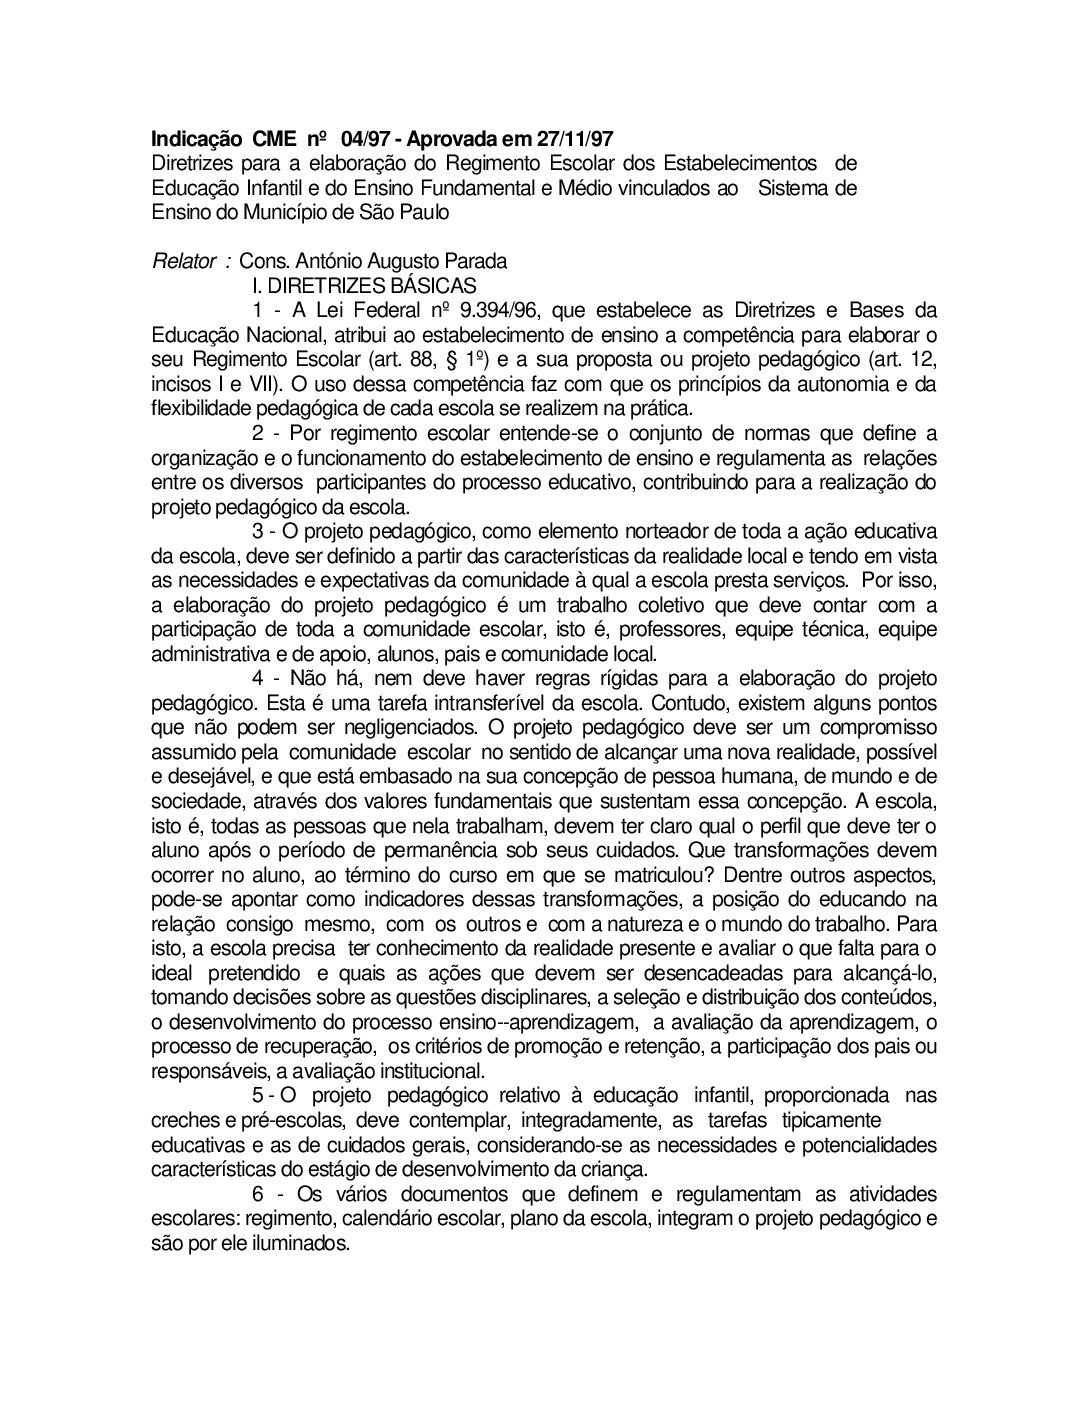 Indicação CME nº 04/1997 - Diretrizes para a elaboração do Regimento Escolar dos Estabelecimentos  de Educação Infantil e do Ensino Fundamental e Médio vinculados ao Sistema de Ensino do Município de São Paulo